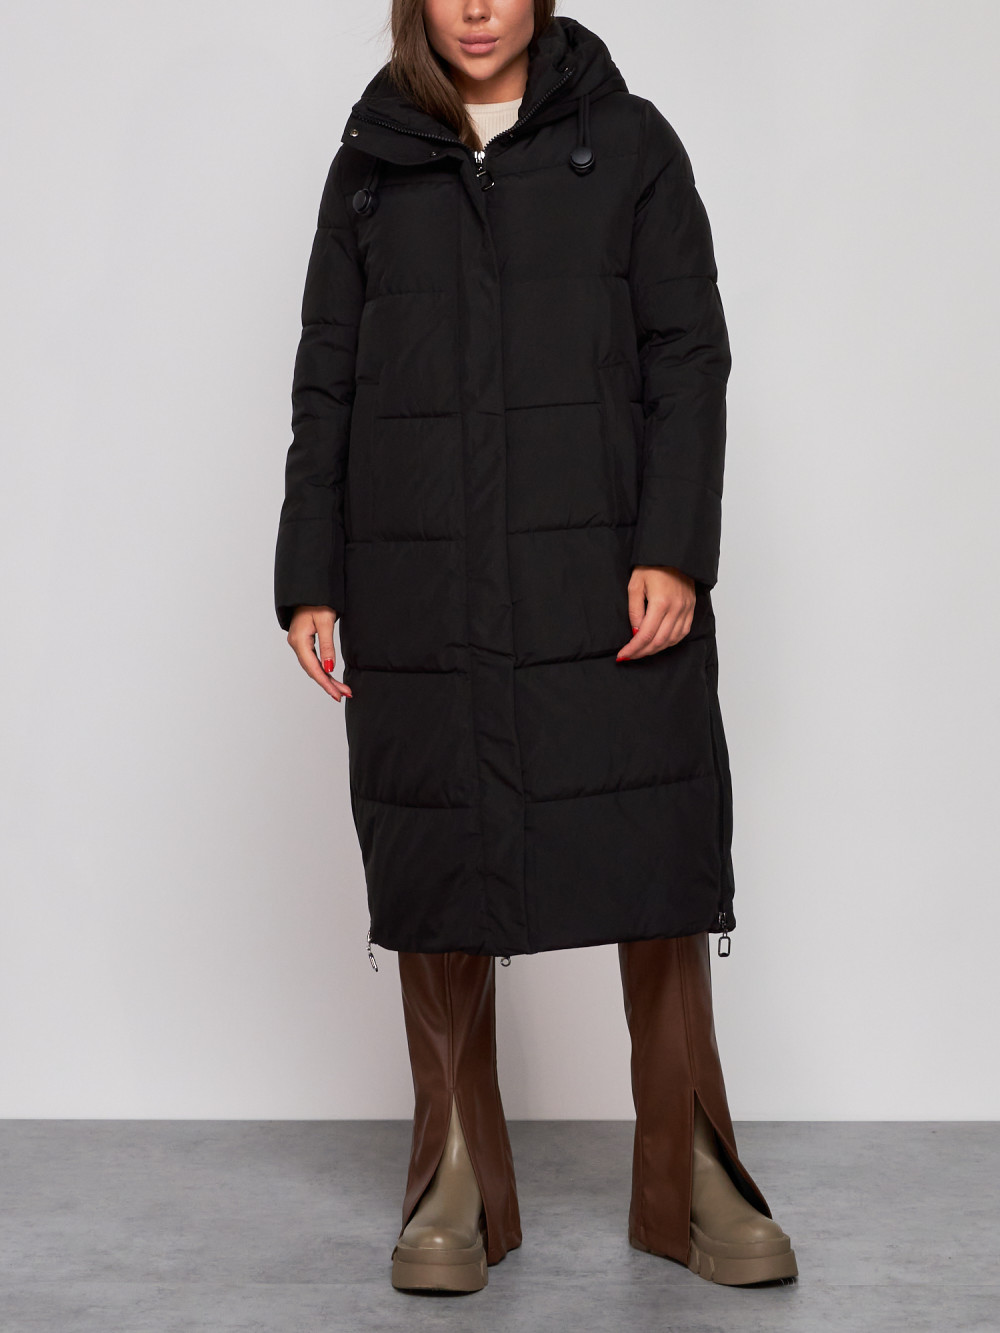 Пальто женское NoBrand AD52329 черное XL